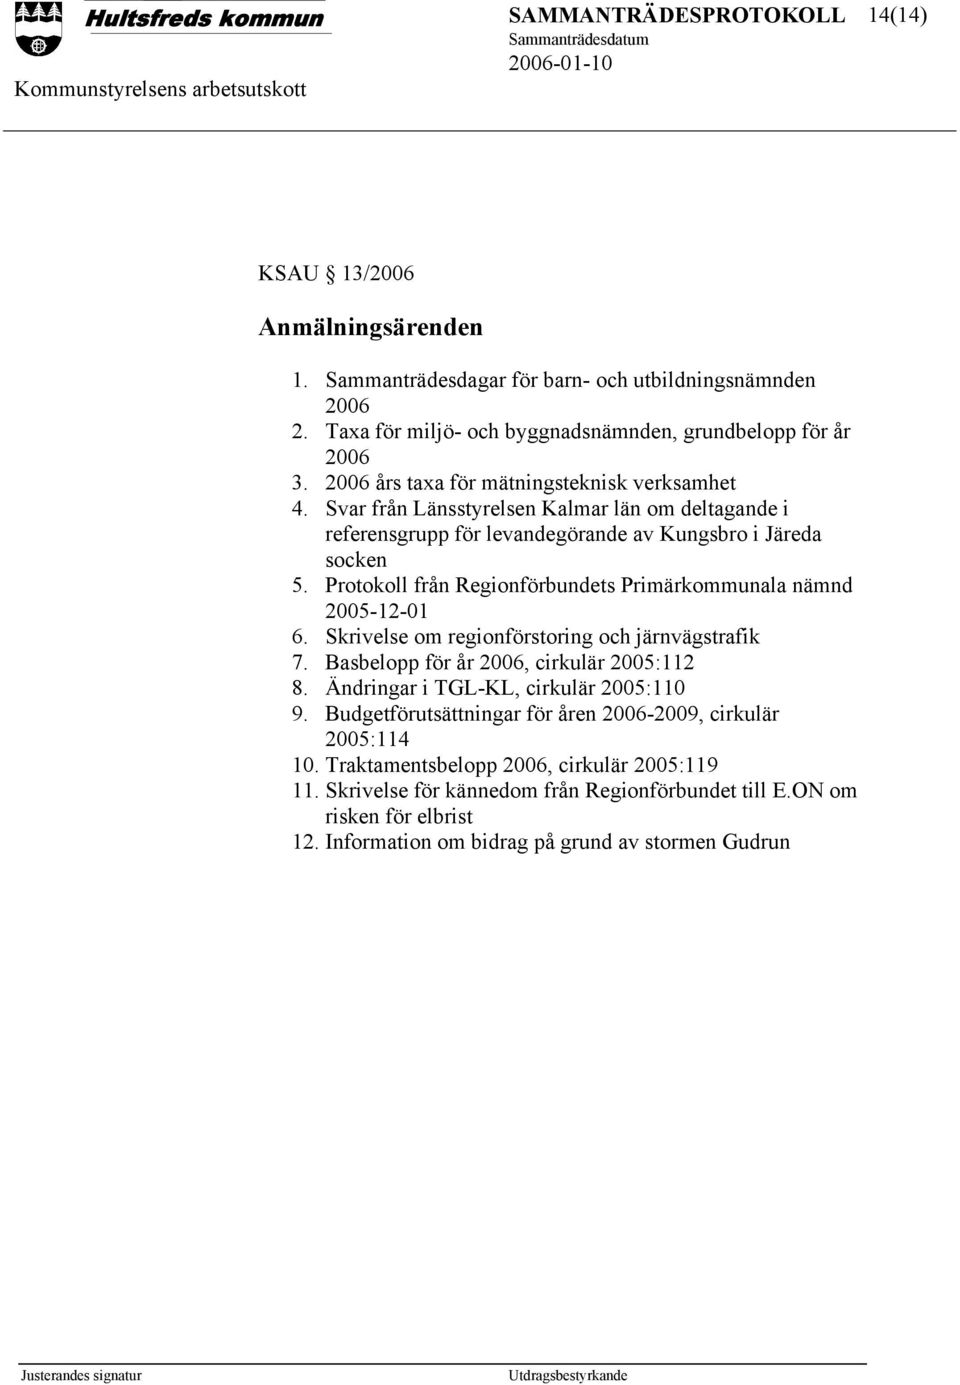 Protokoll från Regionförbundets Primärkommunala nämnd 2005-12-01 6. Skrivelse om regionförstoring och järnvägstrafik 7. Basbelopp för år 2006, cirkulär 2005:112 8.